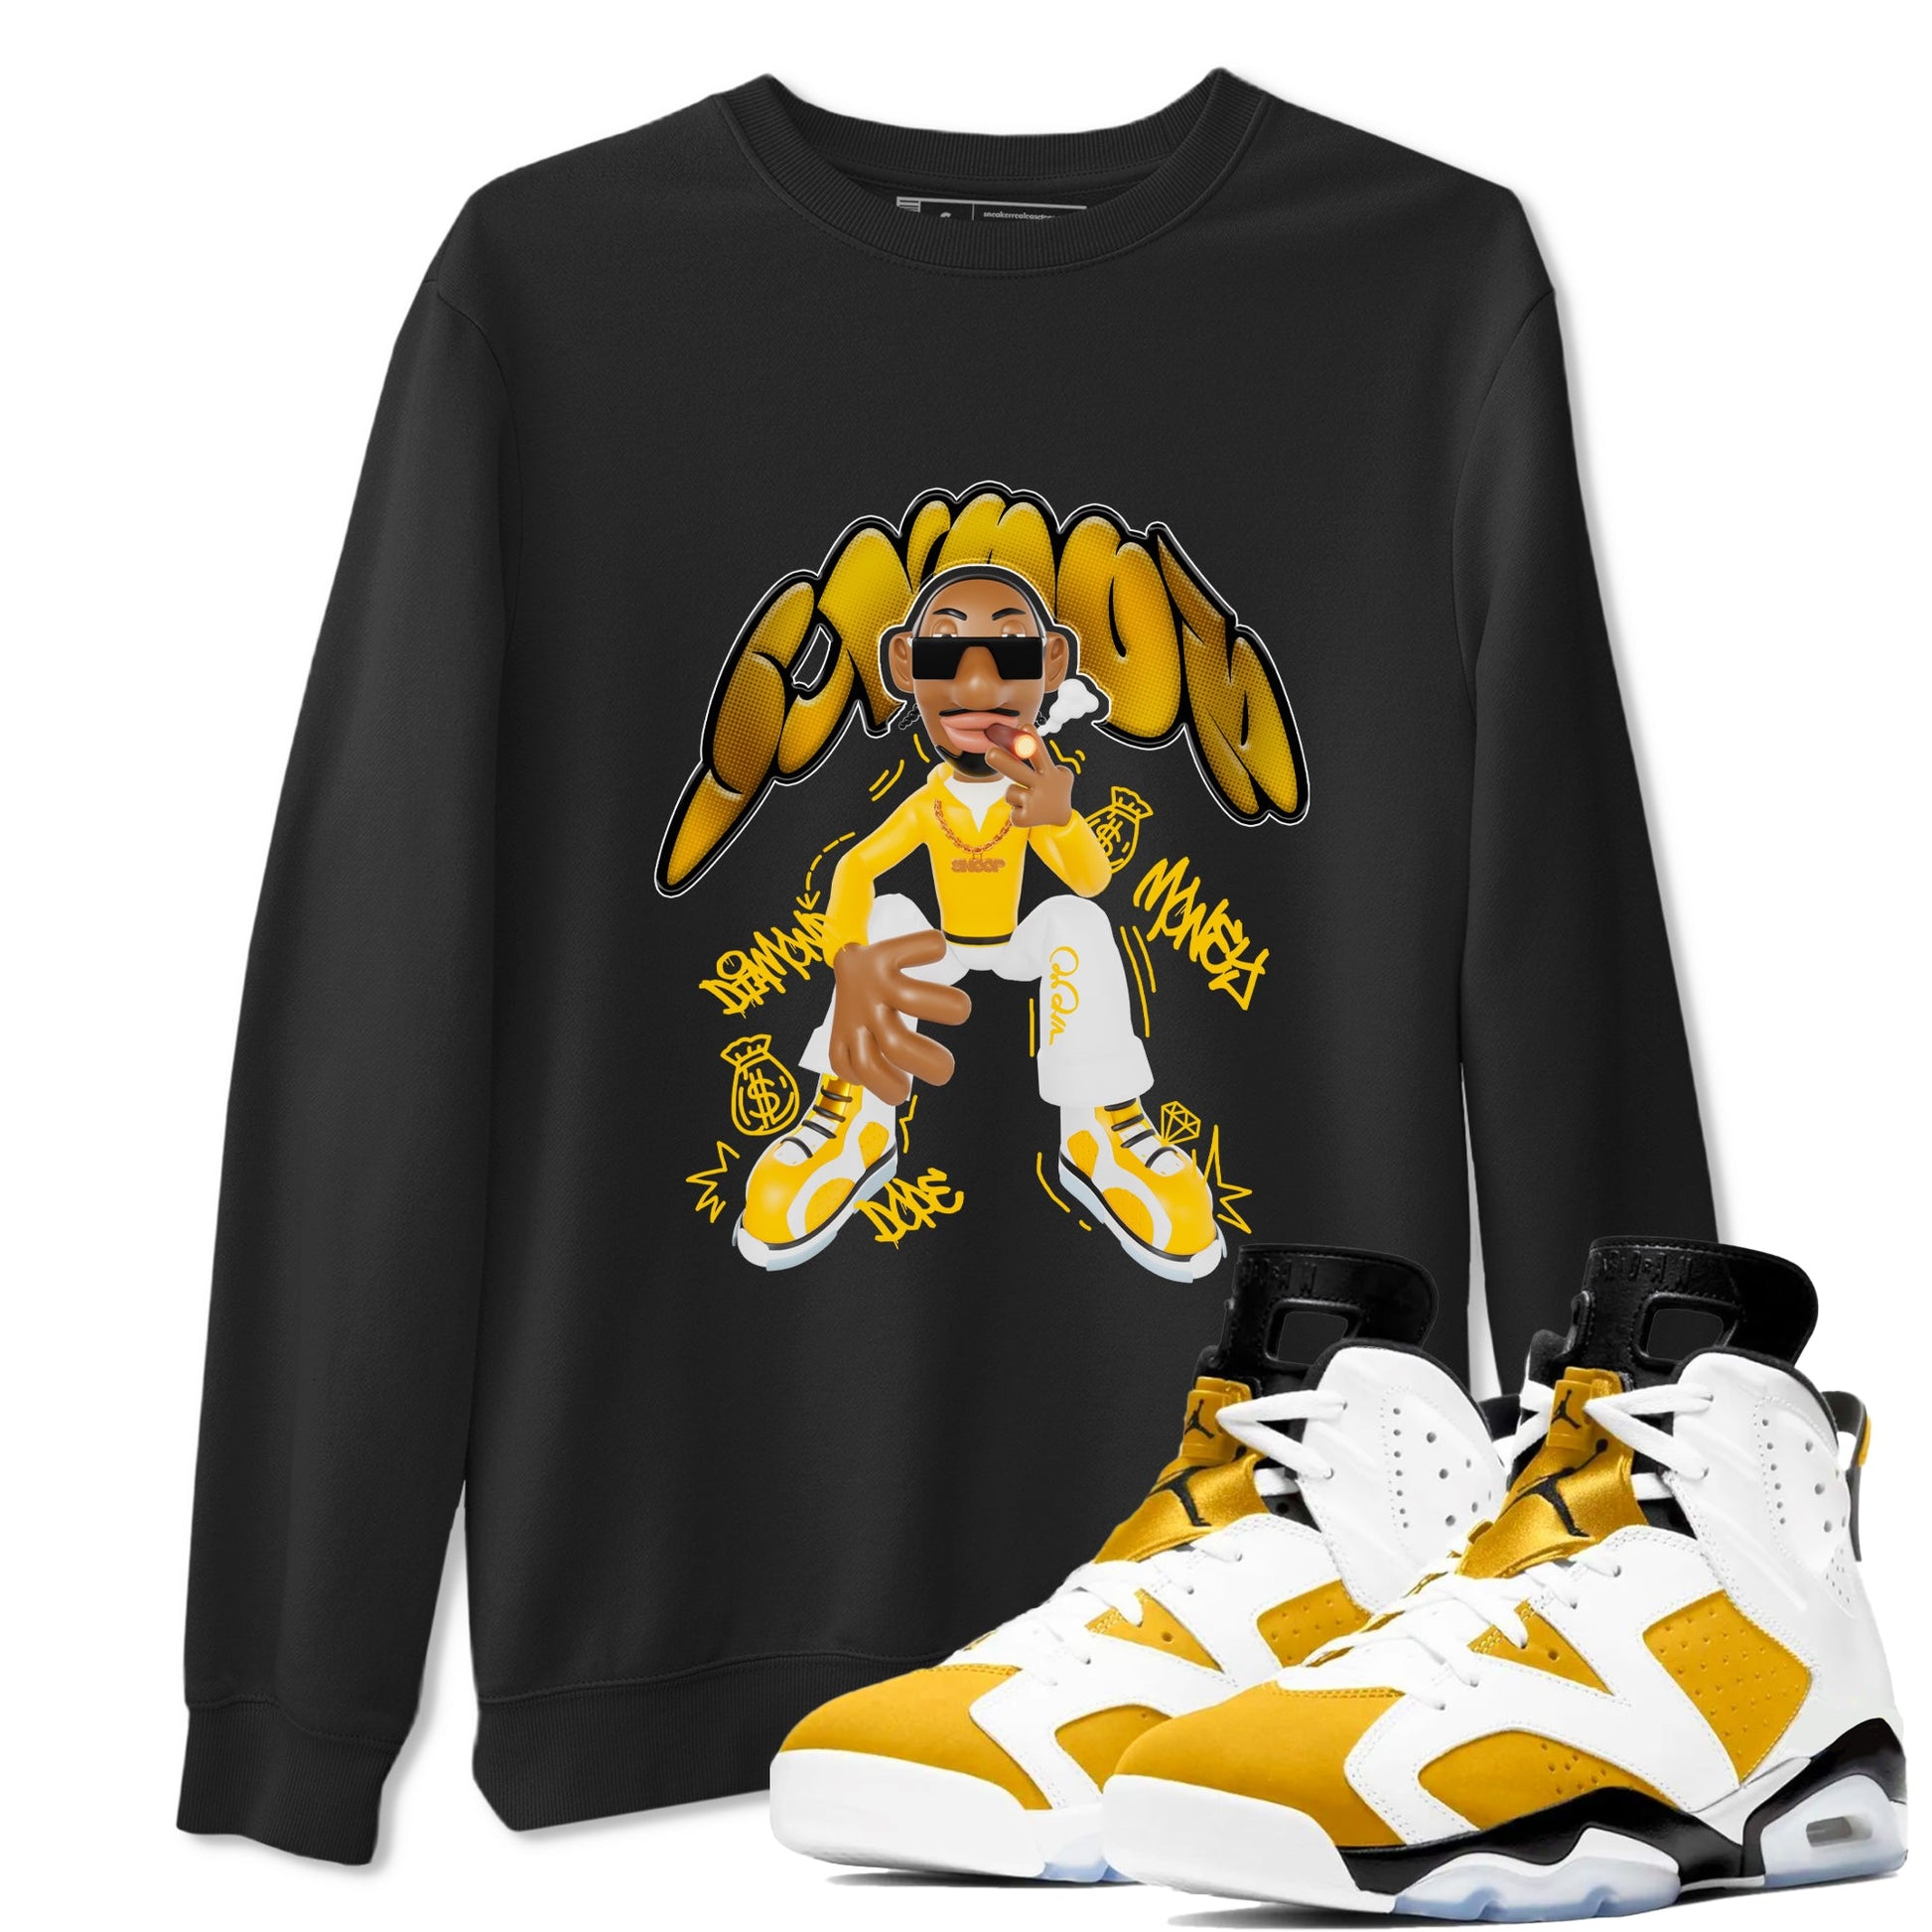 6s Yellow Ochre shirt to match jordans Snoop sneaker tees Air Jordan 6 Yellow Ochre SNRT Sneaker Release Tees Unisex Black 1 T-Shirt